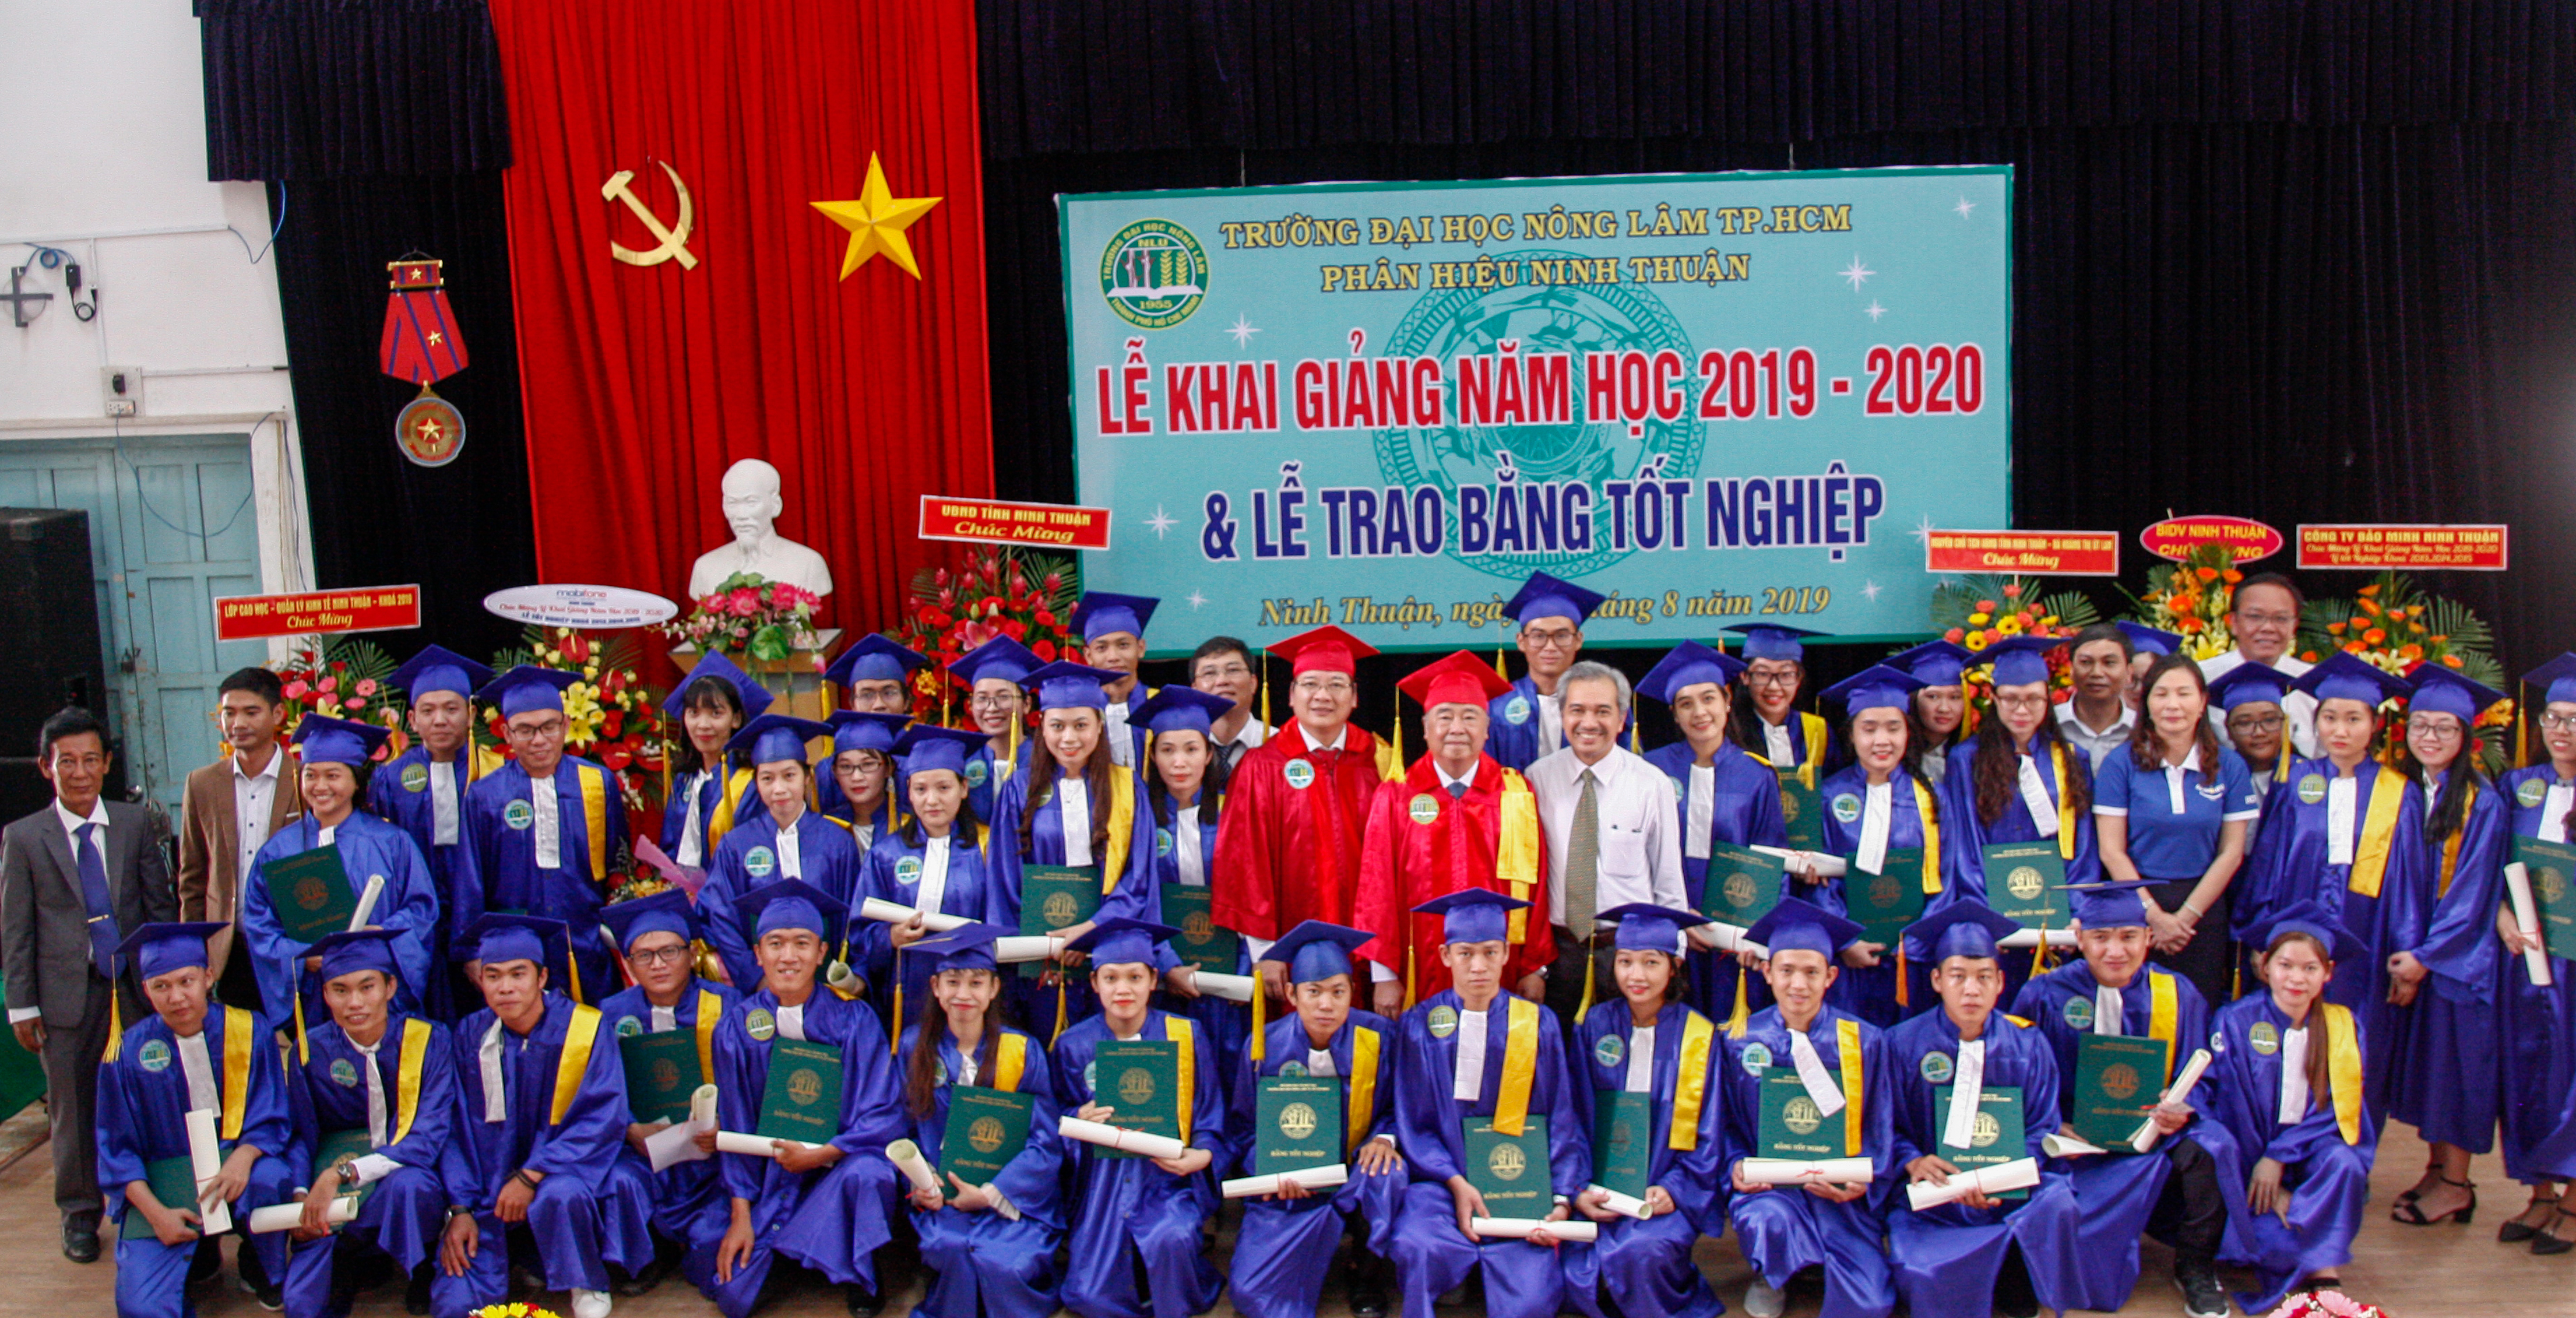 Phân hiệu Đại Học Nông Lâm tại Ninh Thuận